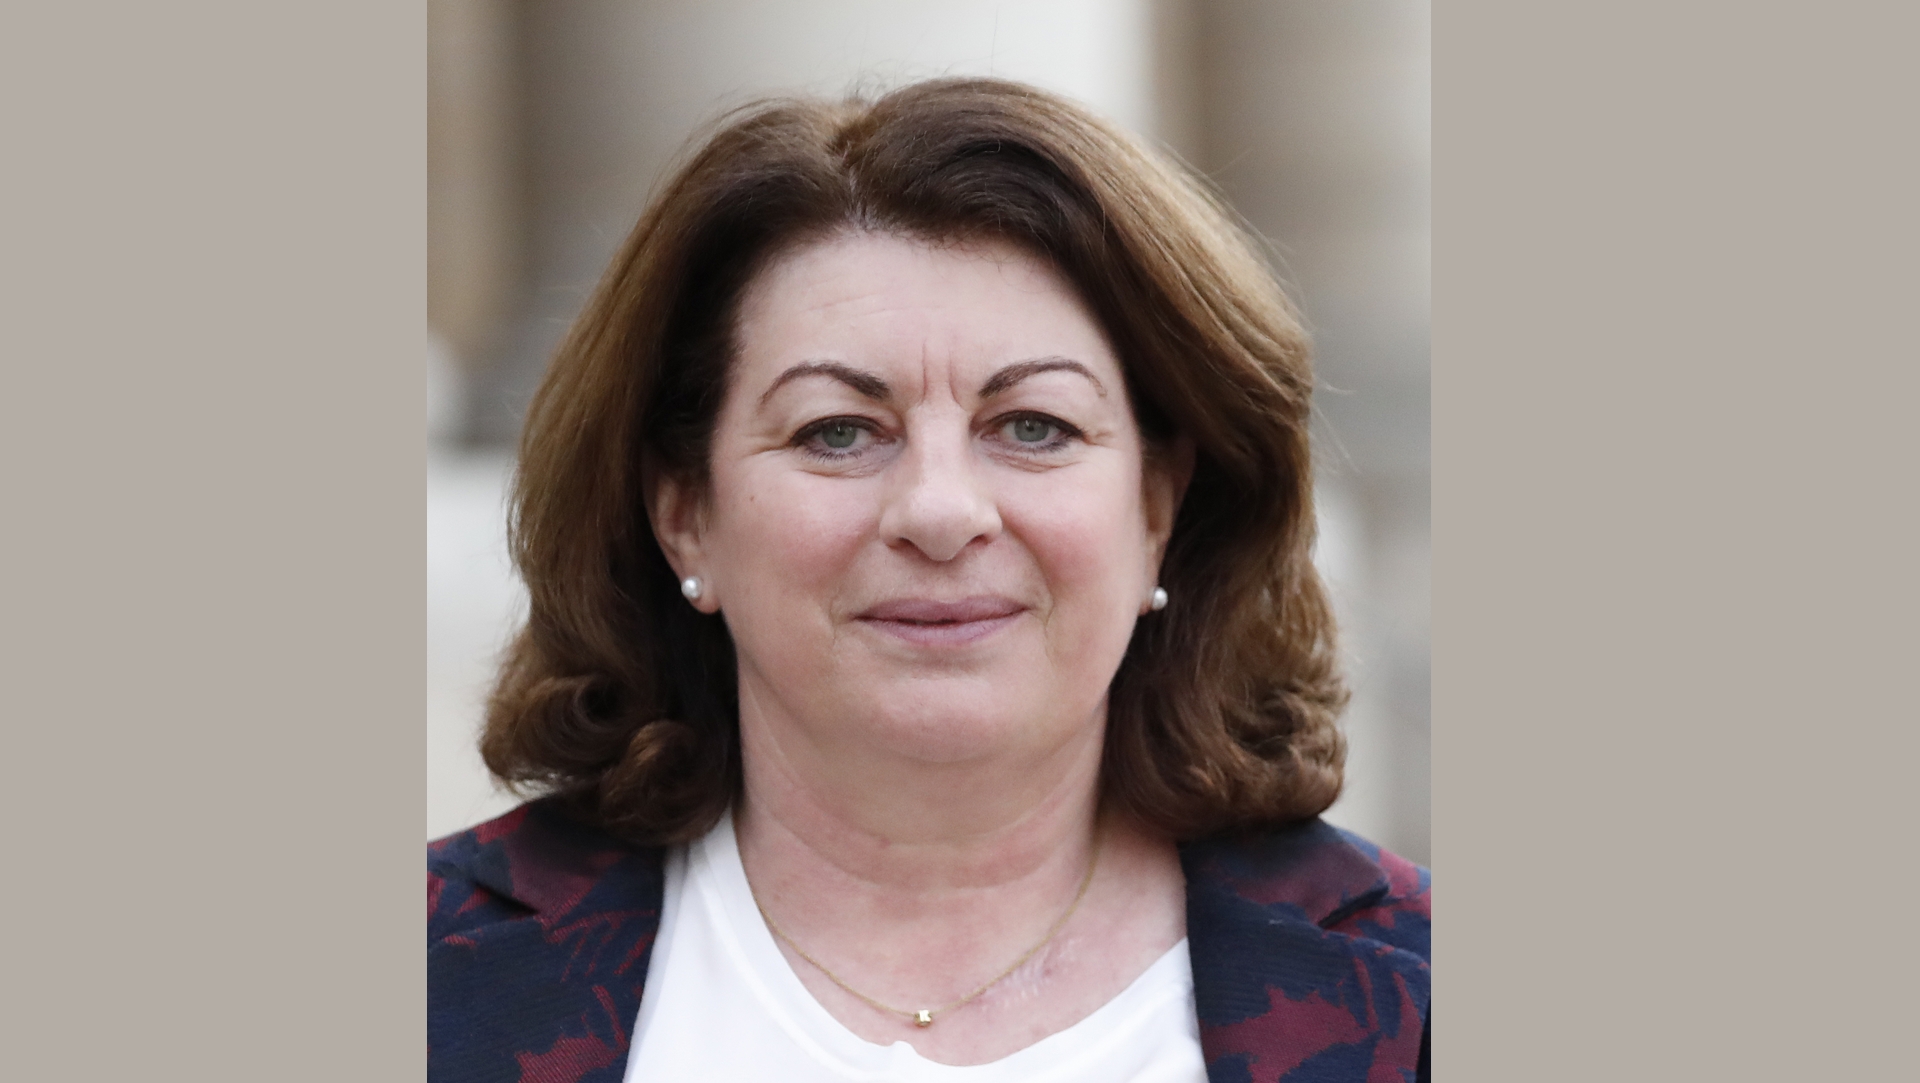 Marie Derain de Vaucresson est la présidente de la commission d'indemnisation des abus Inirr | wikimedia commons CC-BY-SA 2.0